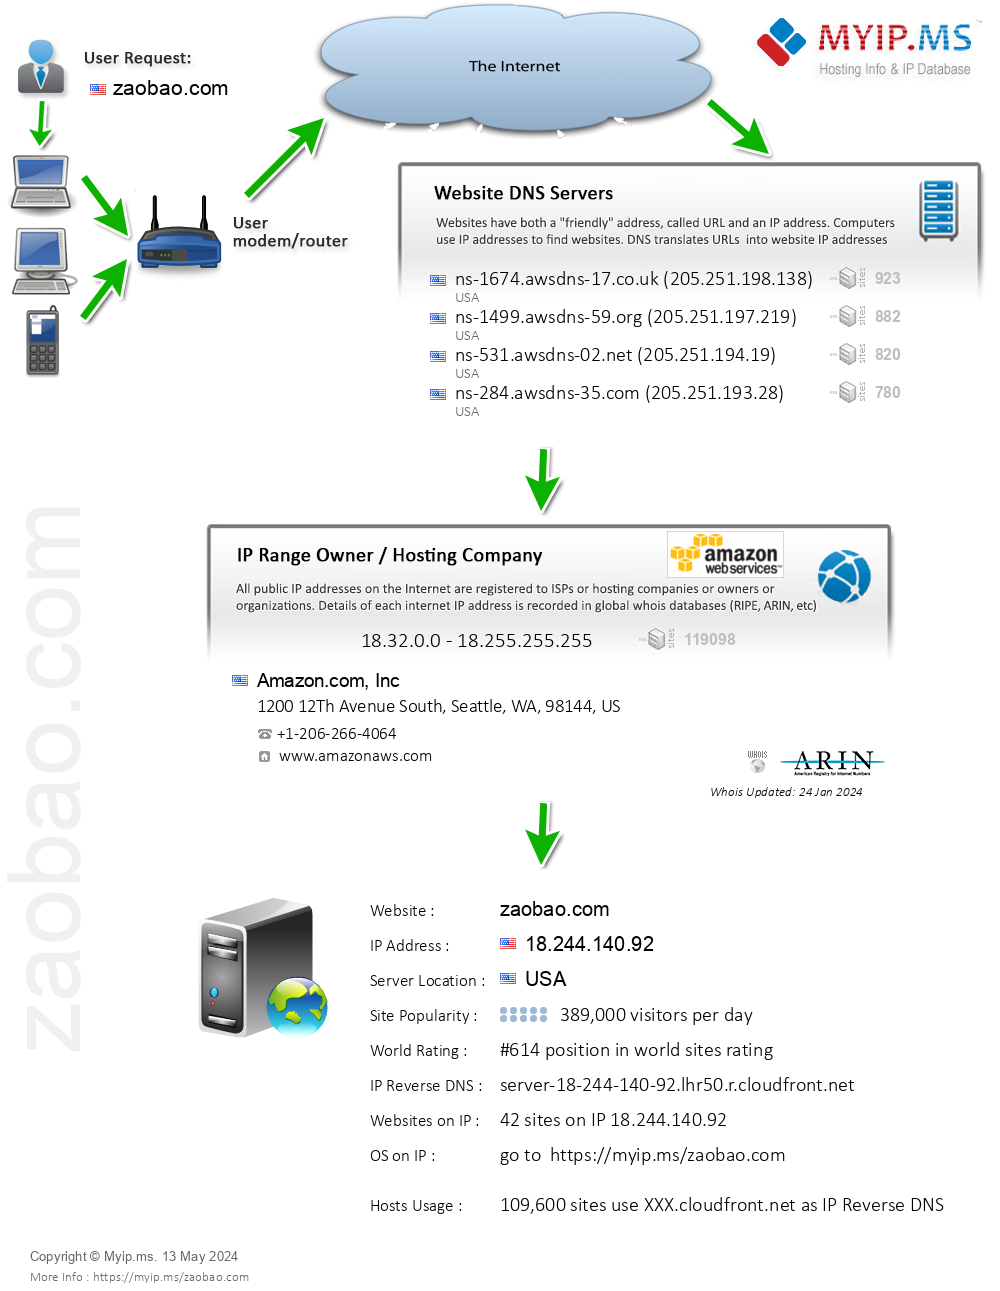 Zaobao.com - Website Hosting Visual IP Diagram